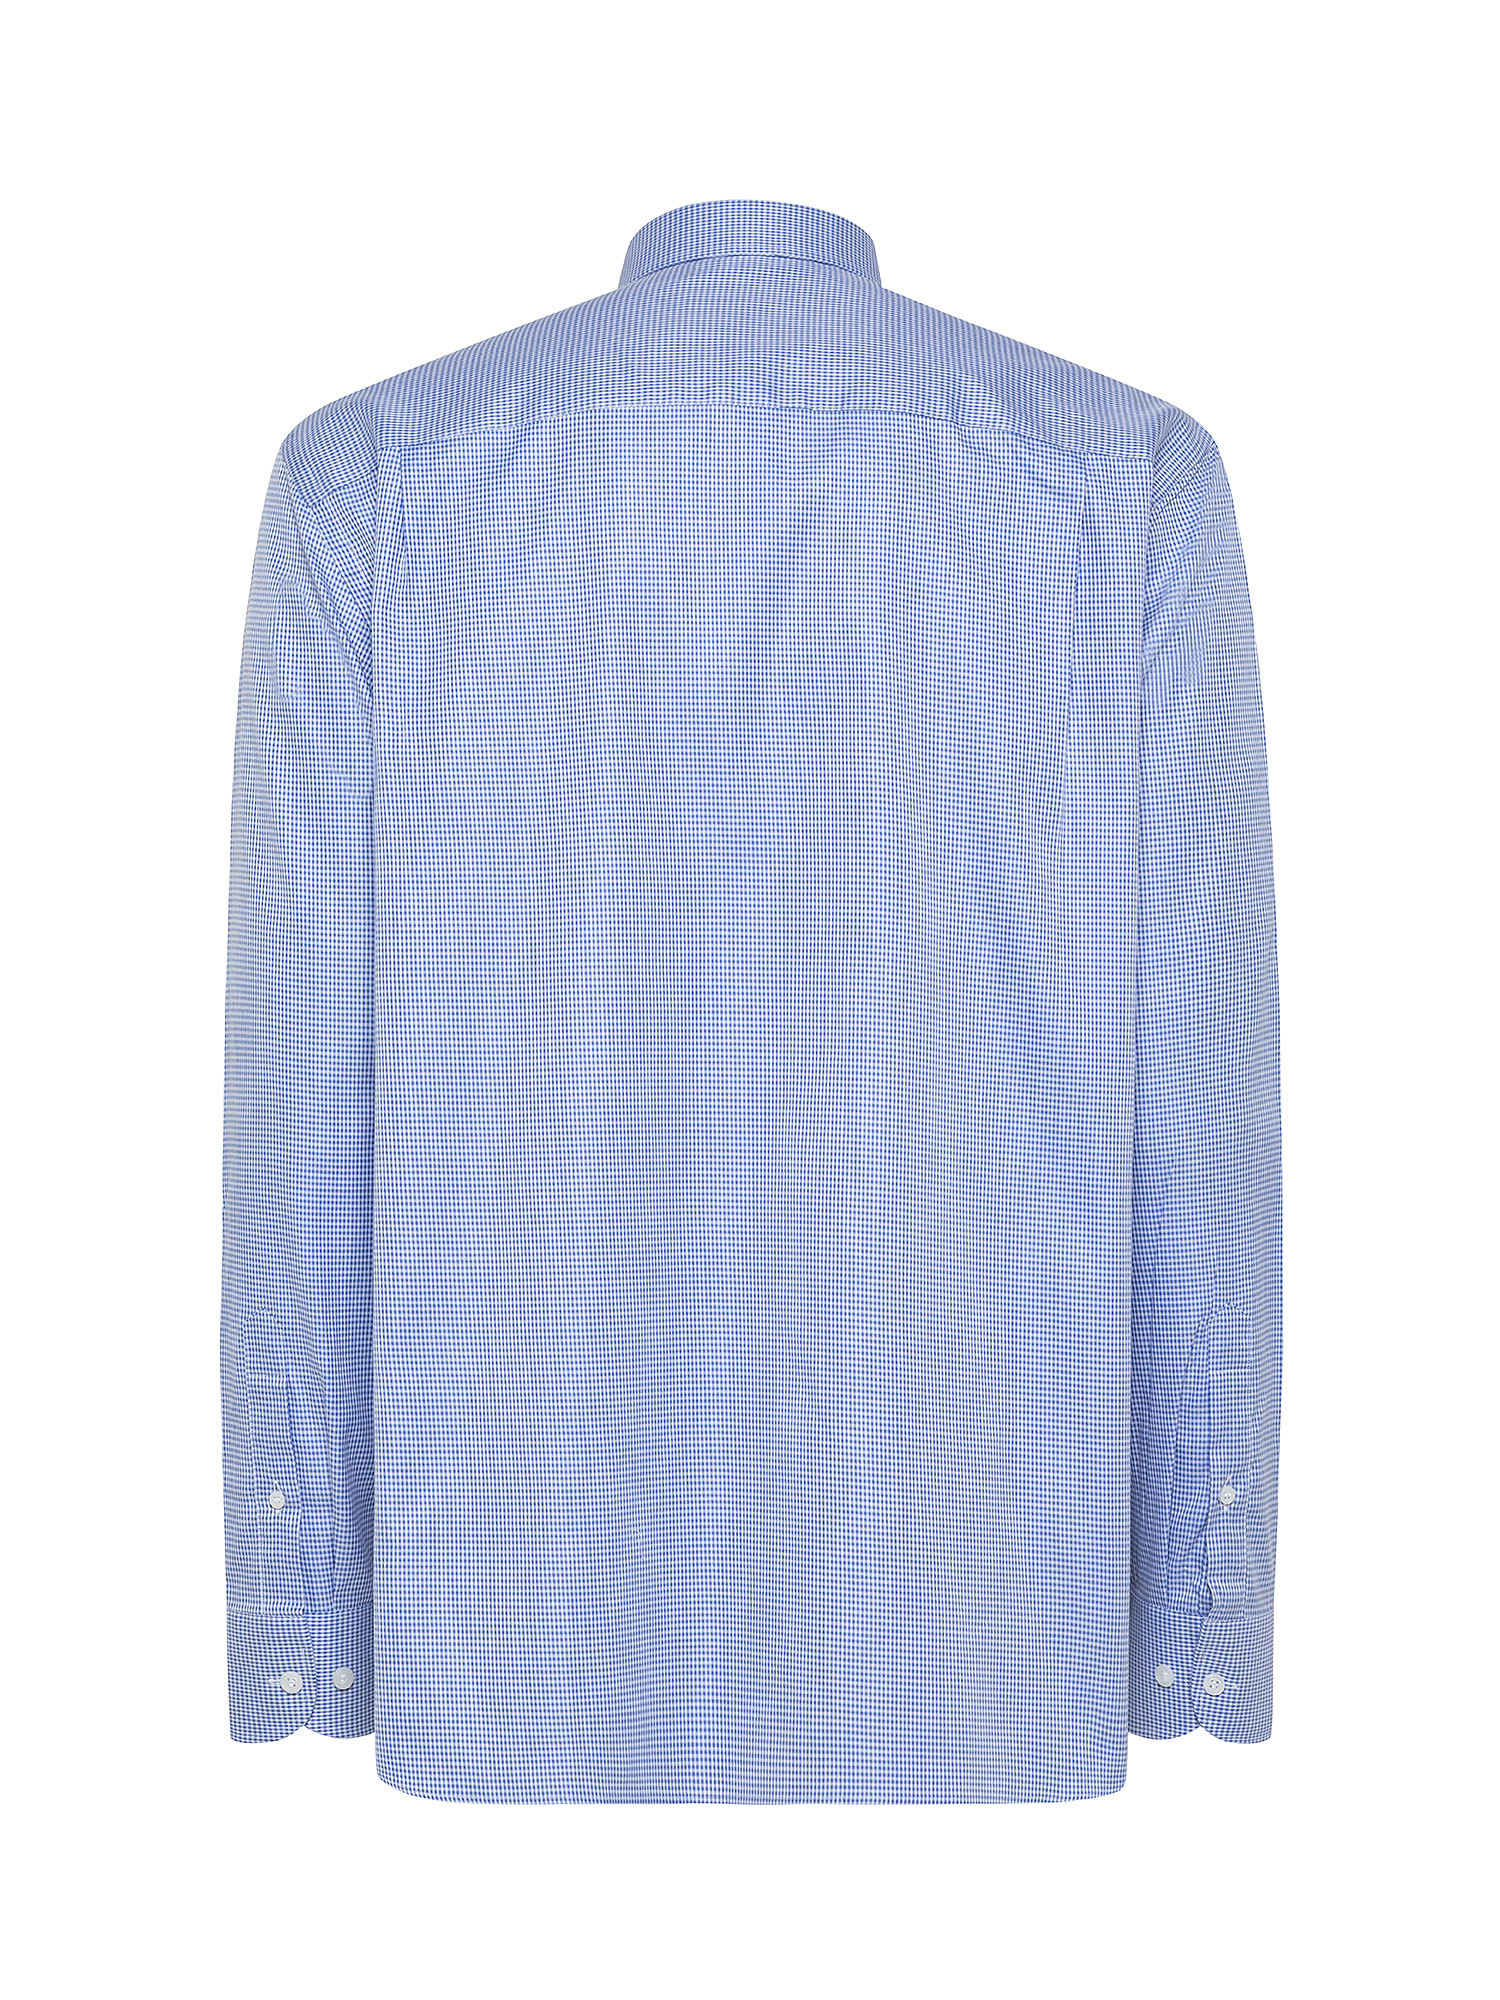 Camicia regular fit in cotone doppio ritorto, Azzurro, large